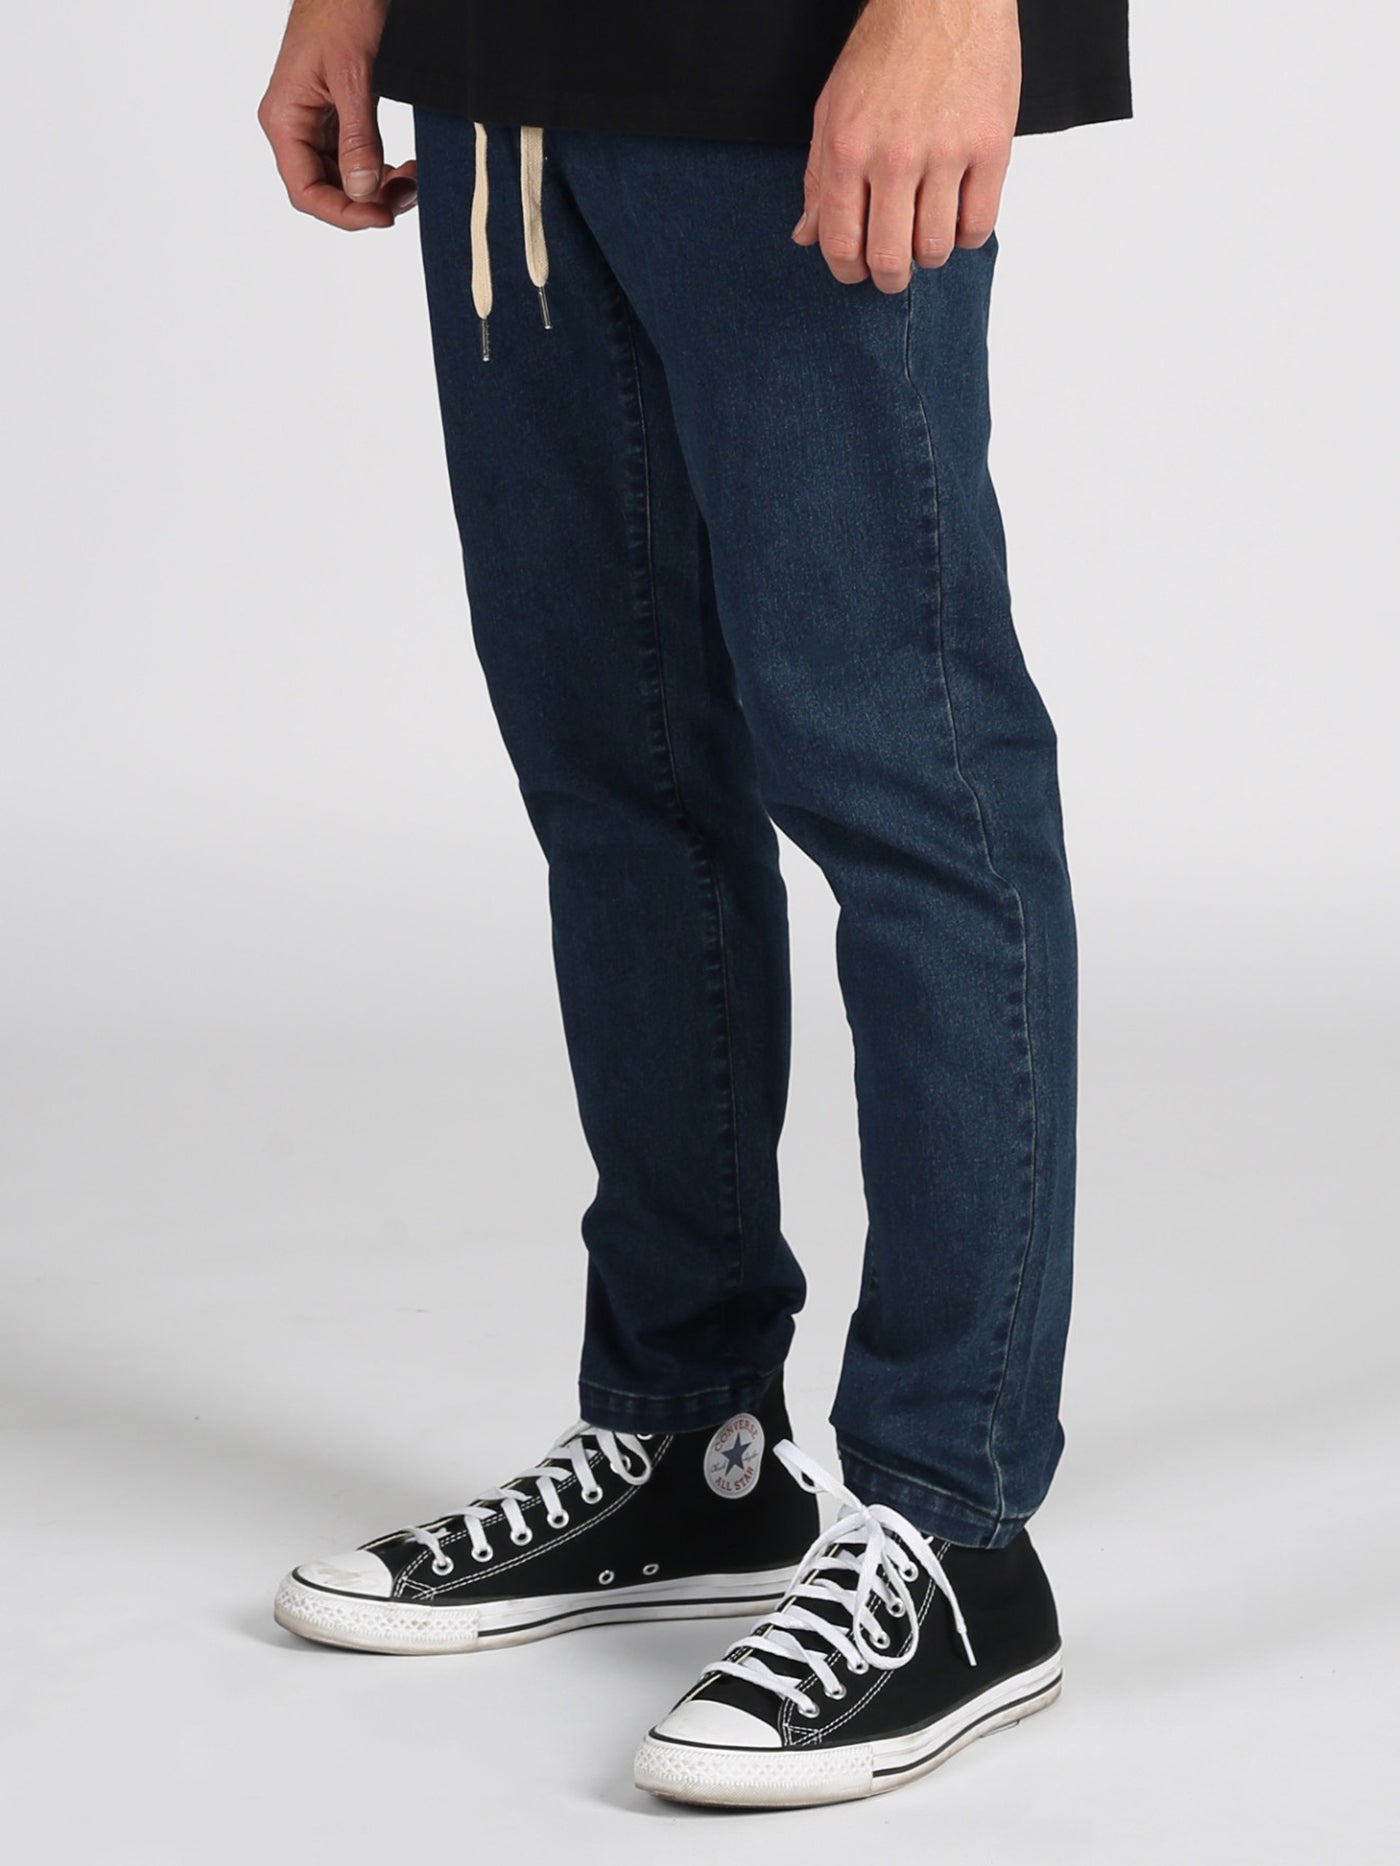 Lira San Clemente Jeans